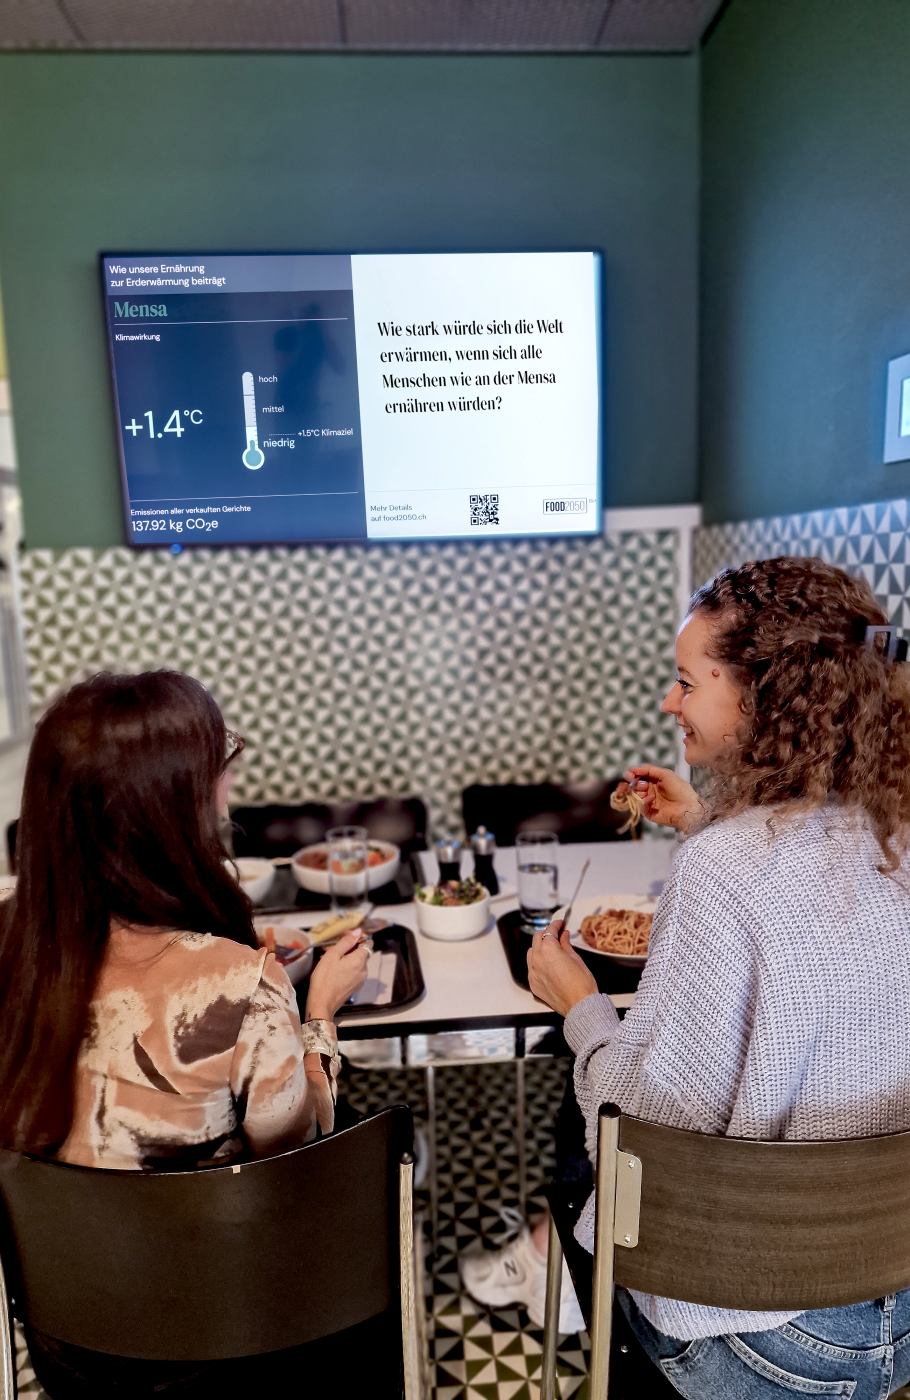 Screen an der Wand mit Informationen zum Erderwärmungspotenzial der Menüs, davor ein Tisch mit zwei Frauen beim Essen